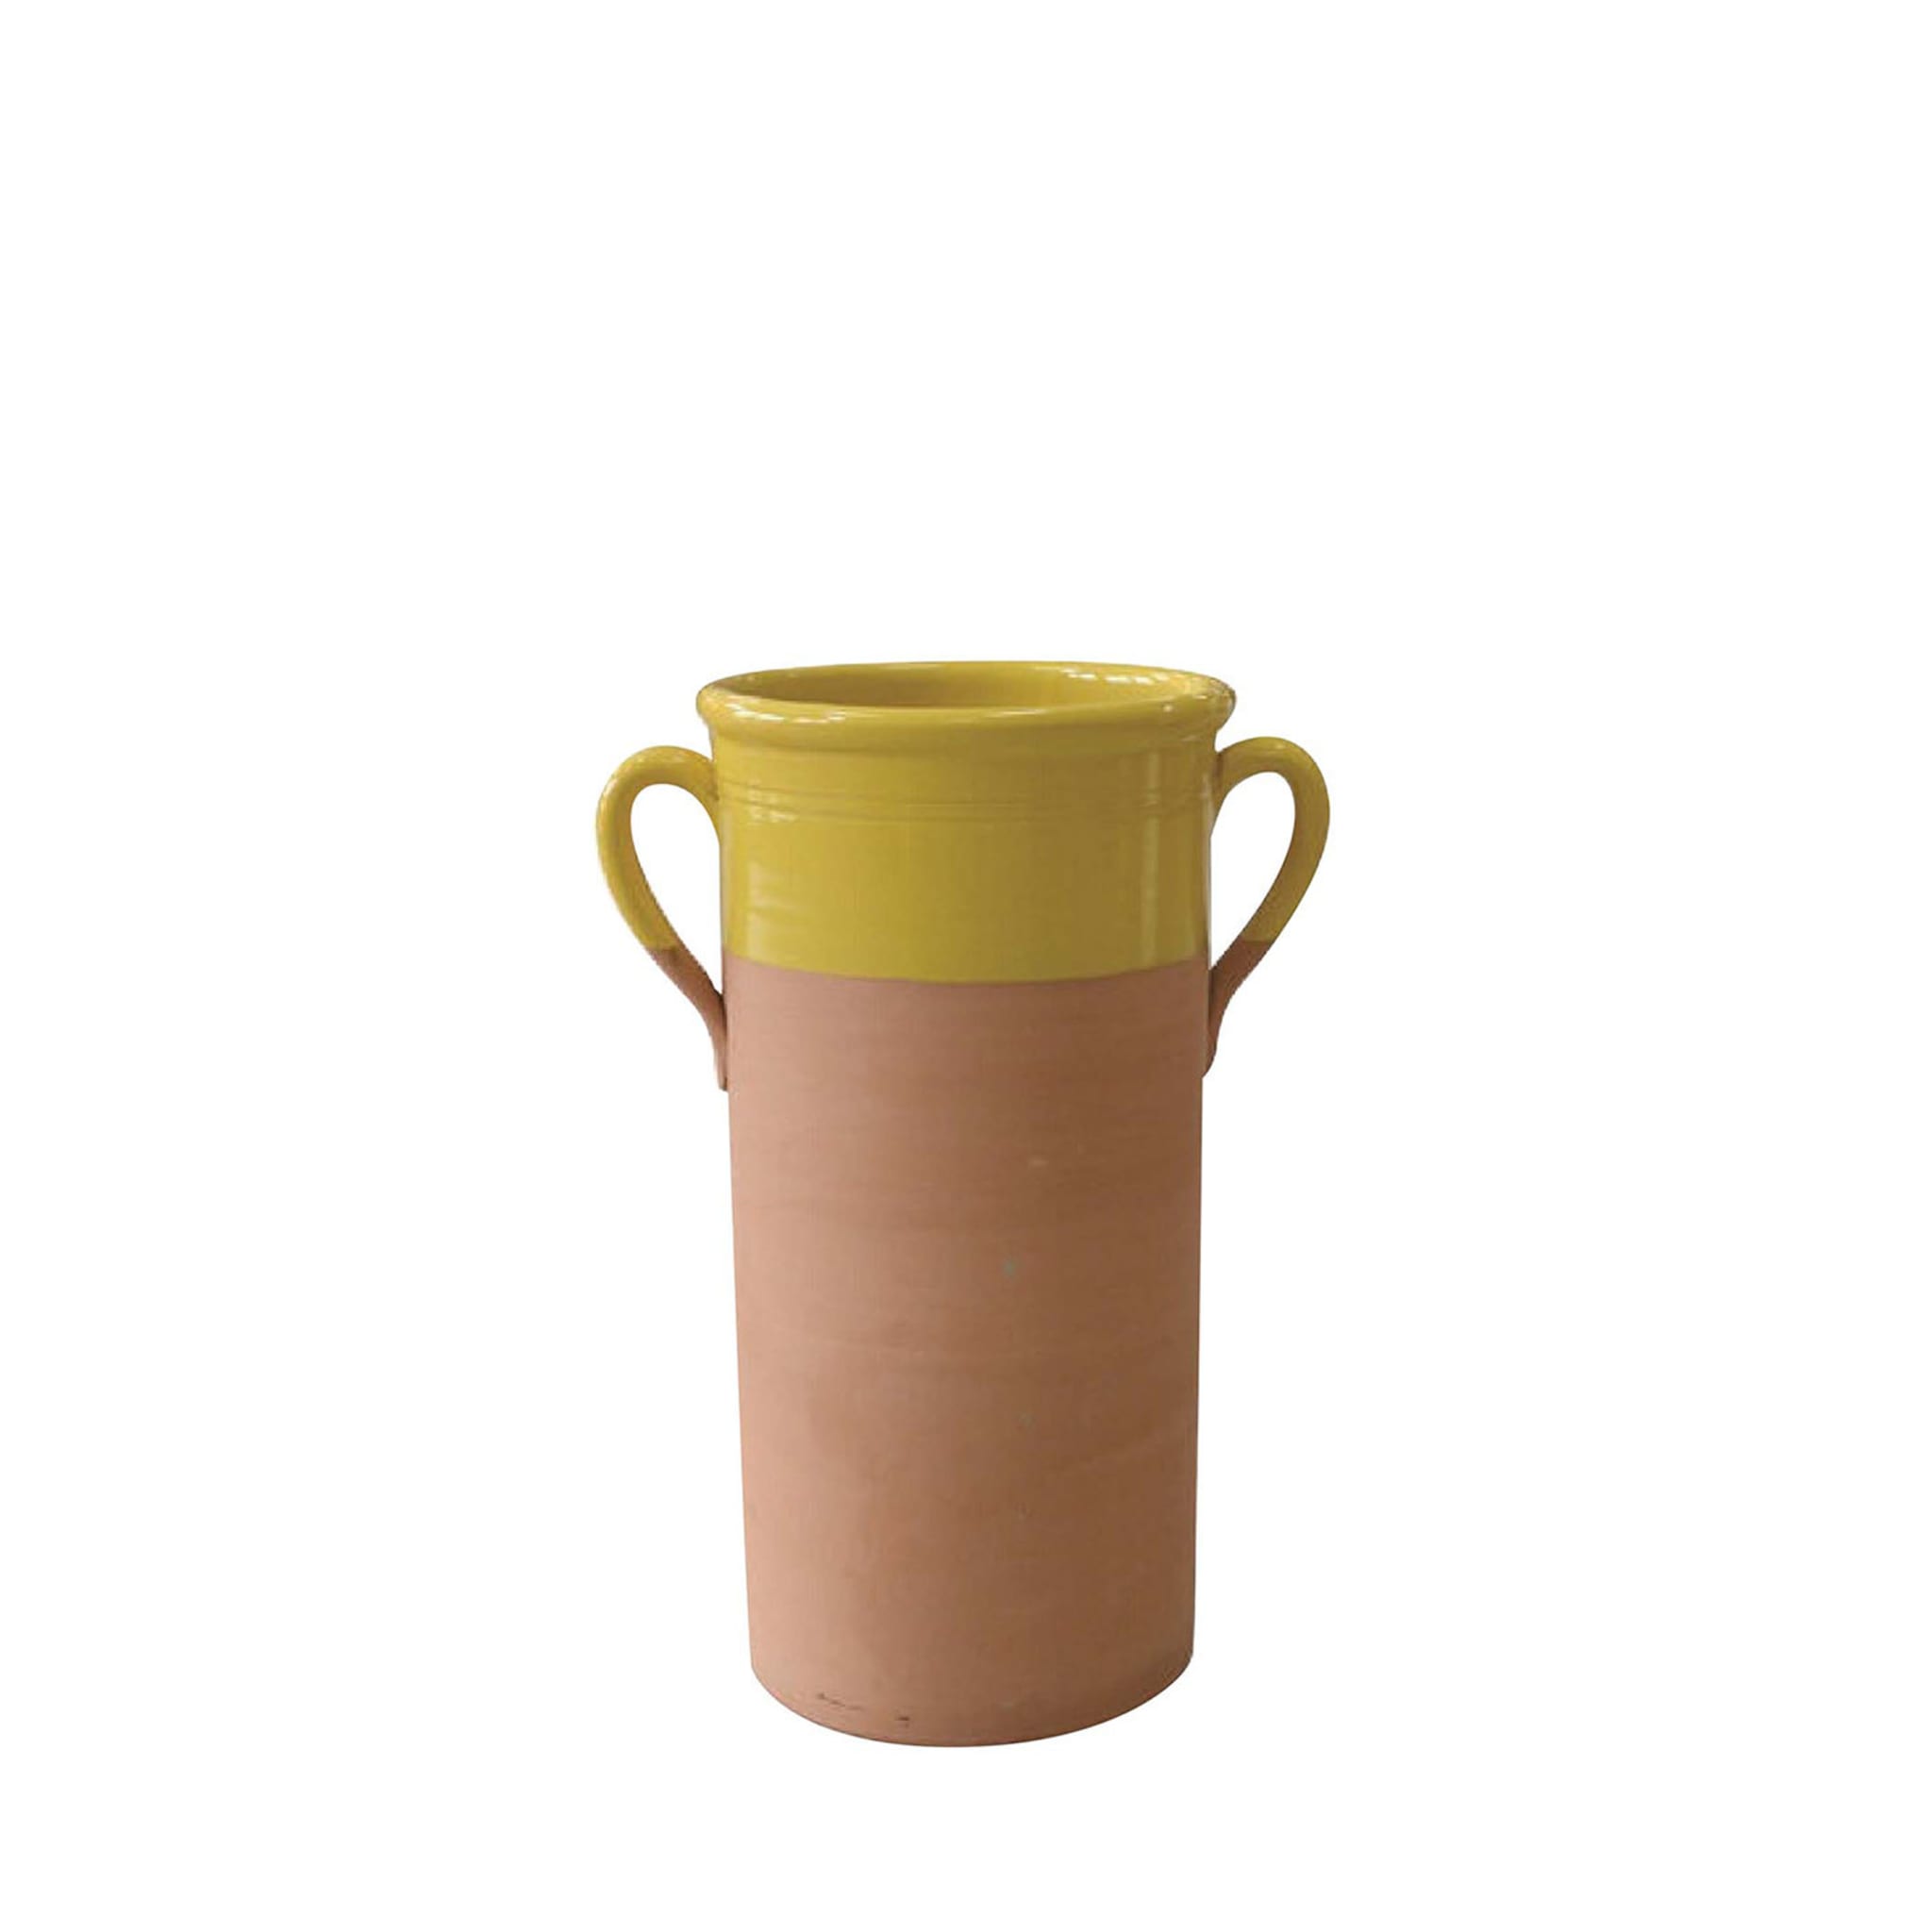 Petit vase cylindrique jaune avec anses - Vue principale